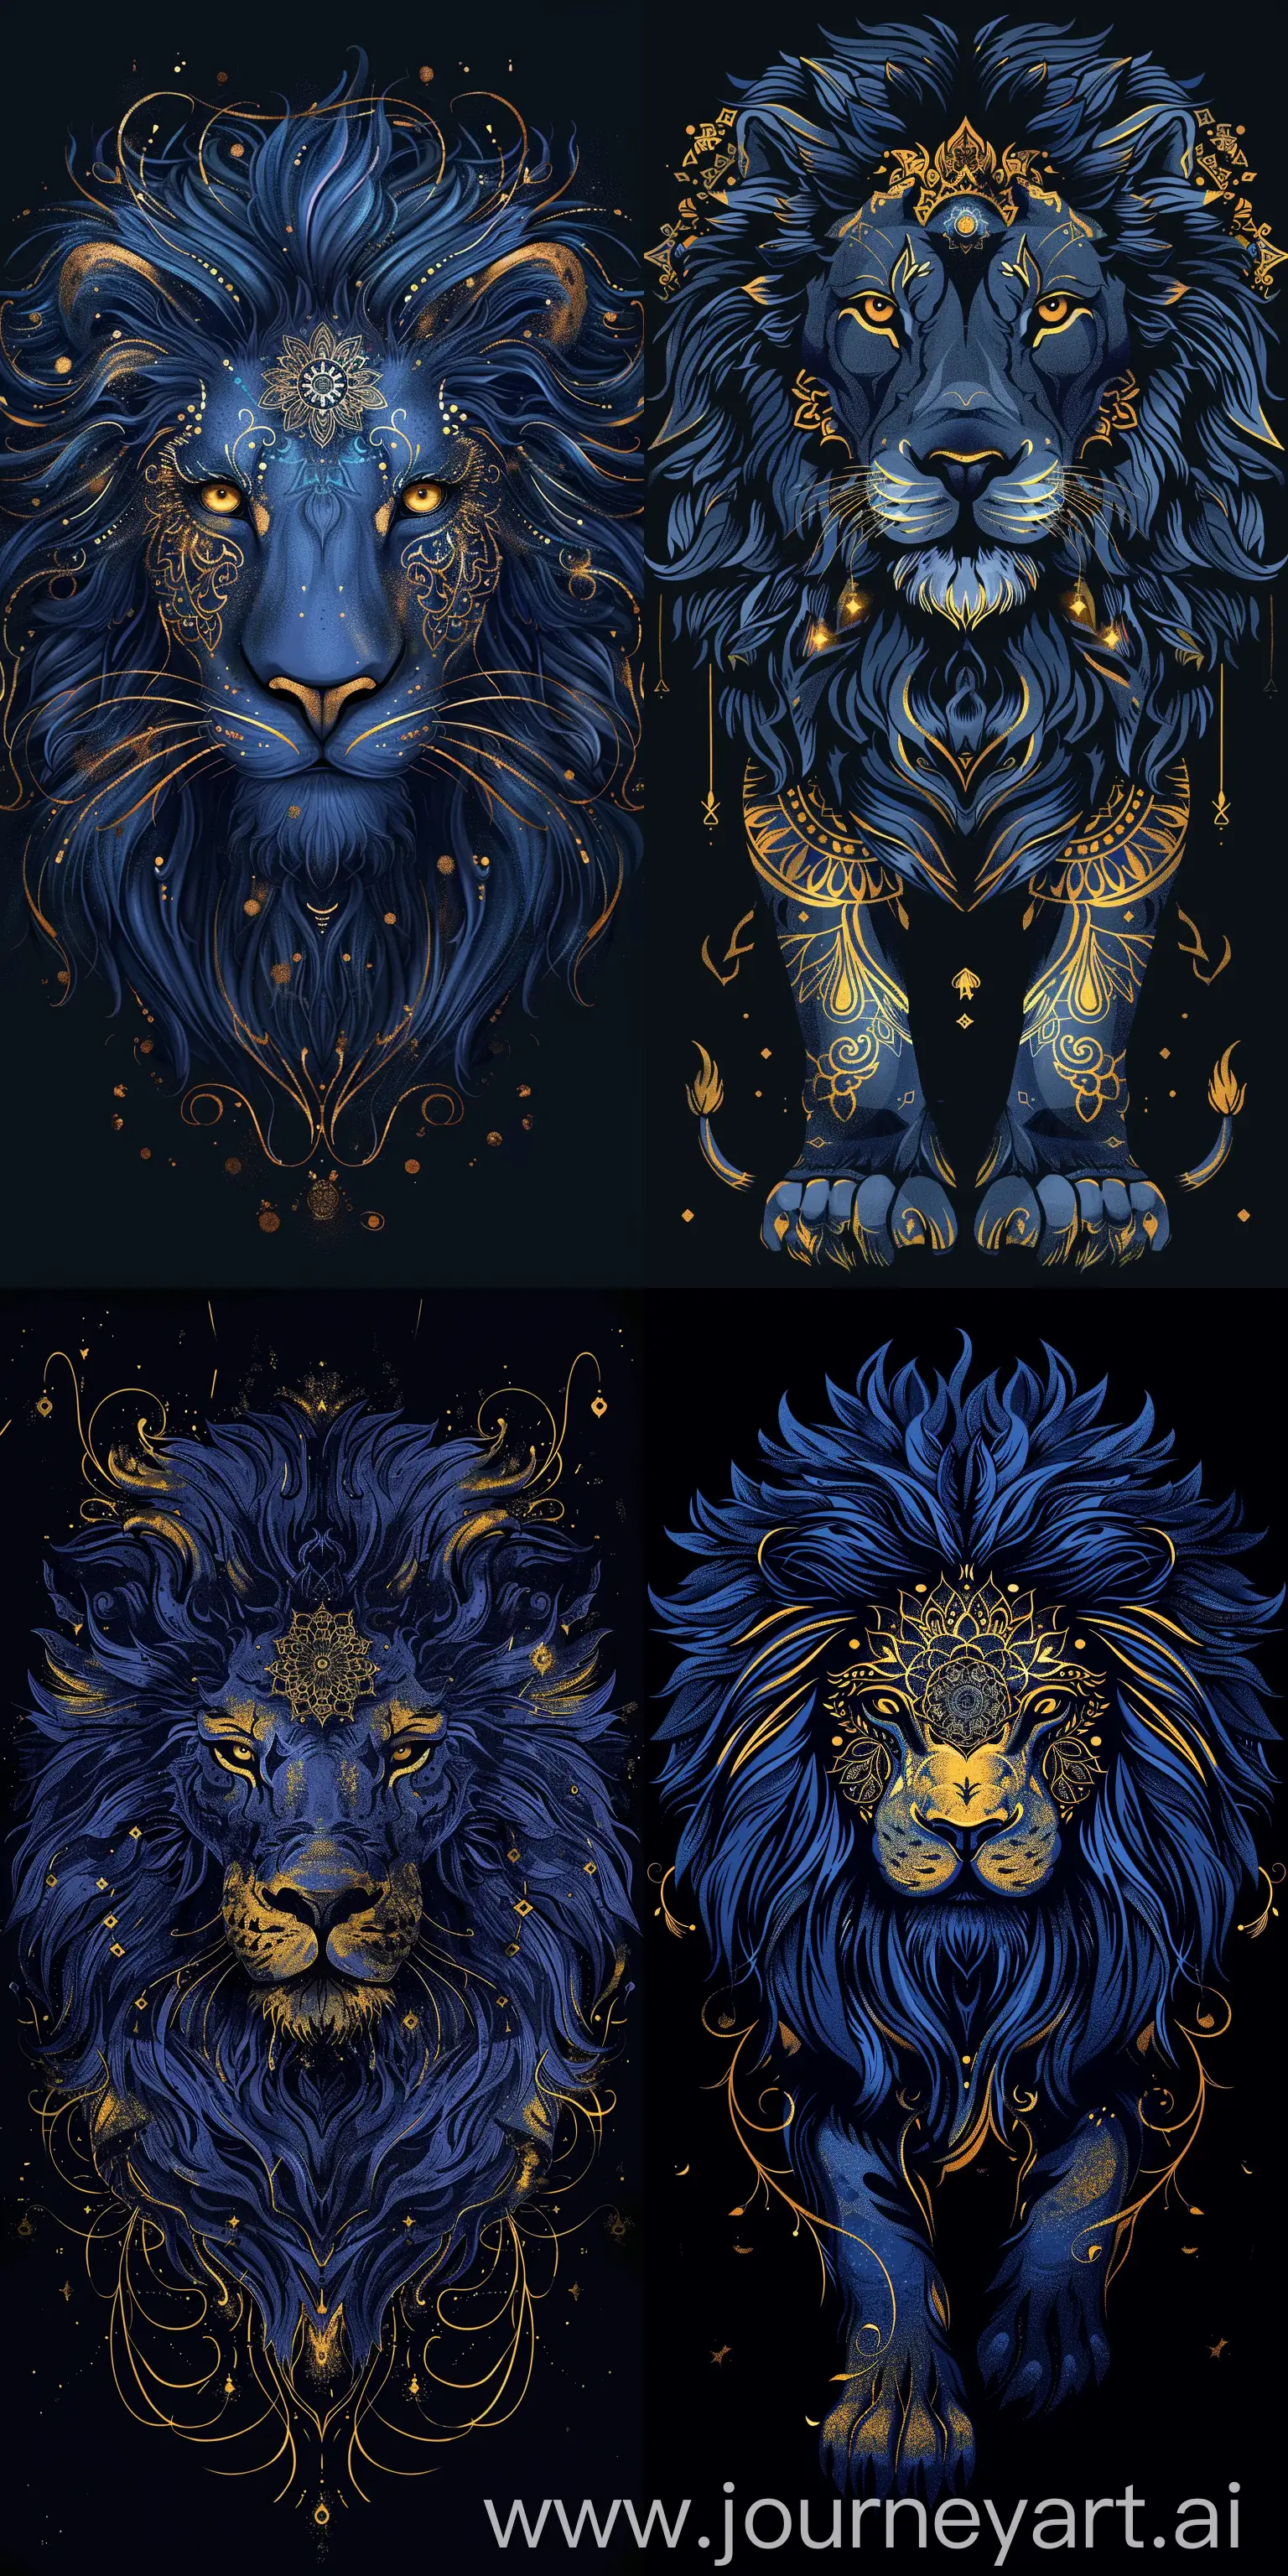 Majestic-Lion-Mandala-Dark-Blue-and-Golden-Artwork-on-Black-Background